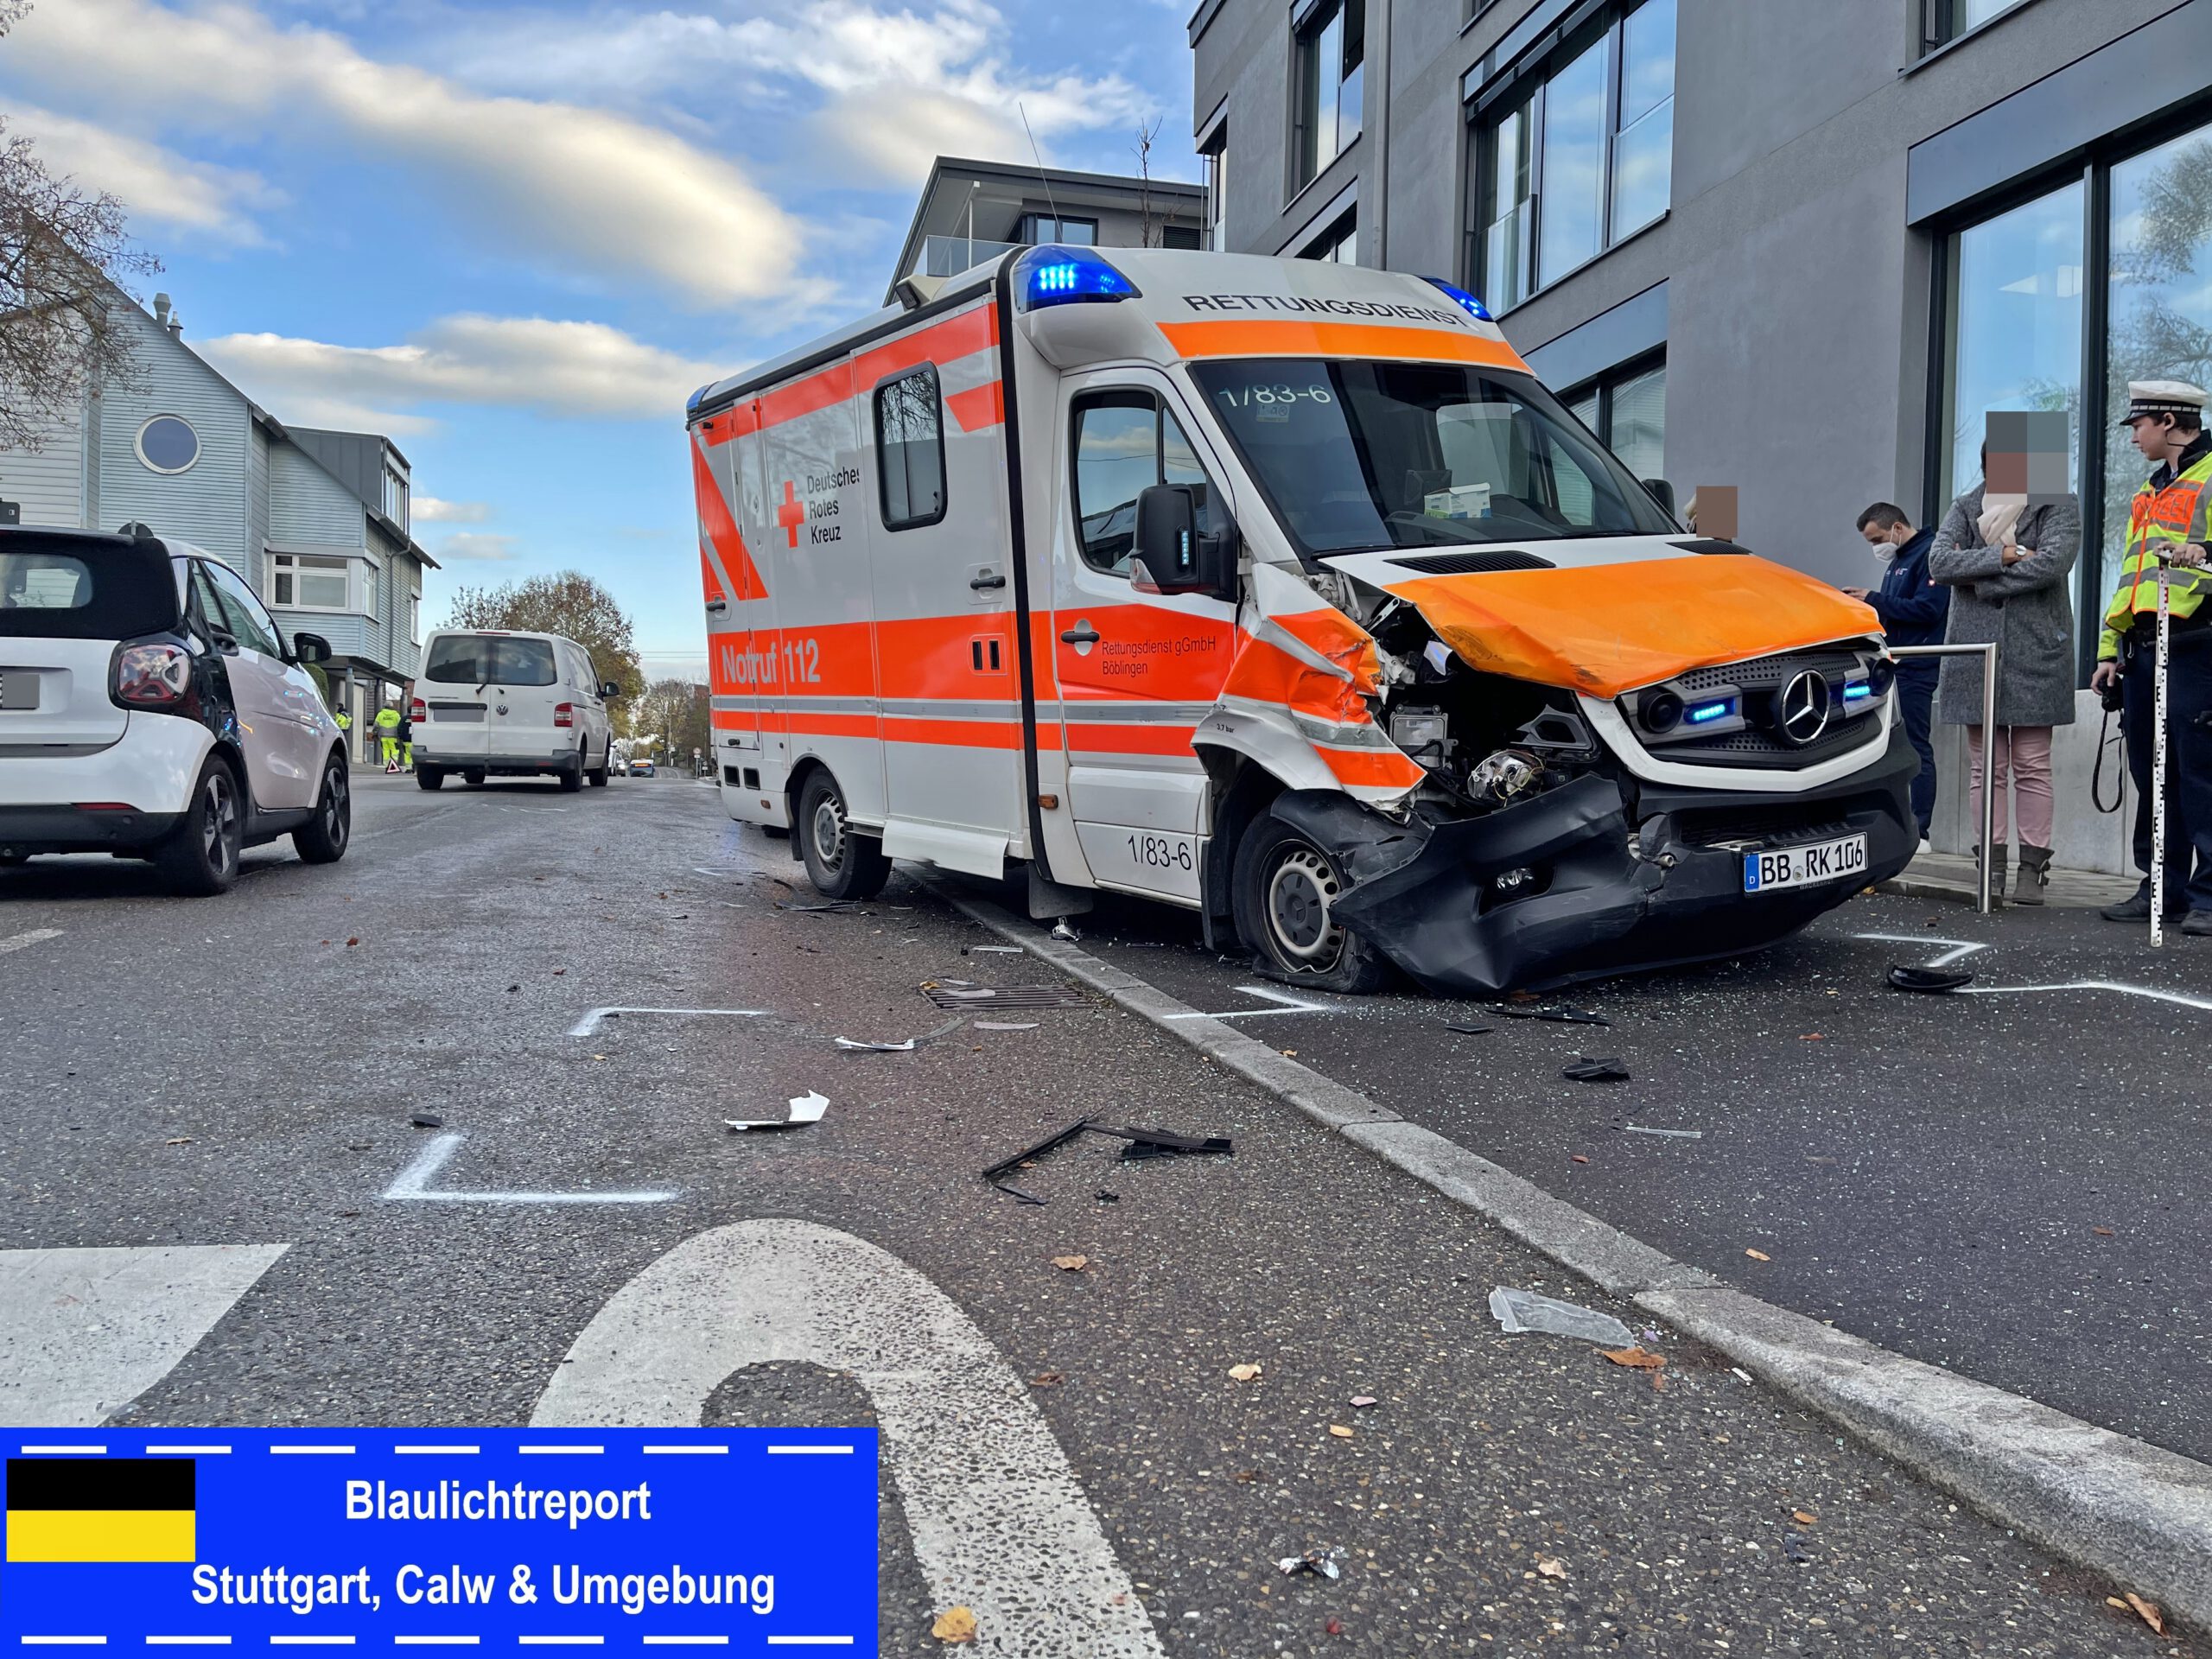 14.11.2022-Dagersheim: Unfall mit Rettungswagen auf Einsatzfahrt